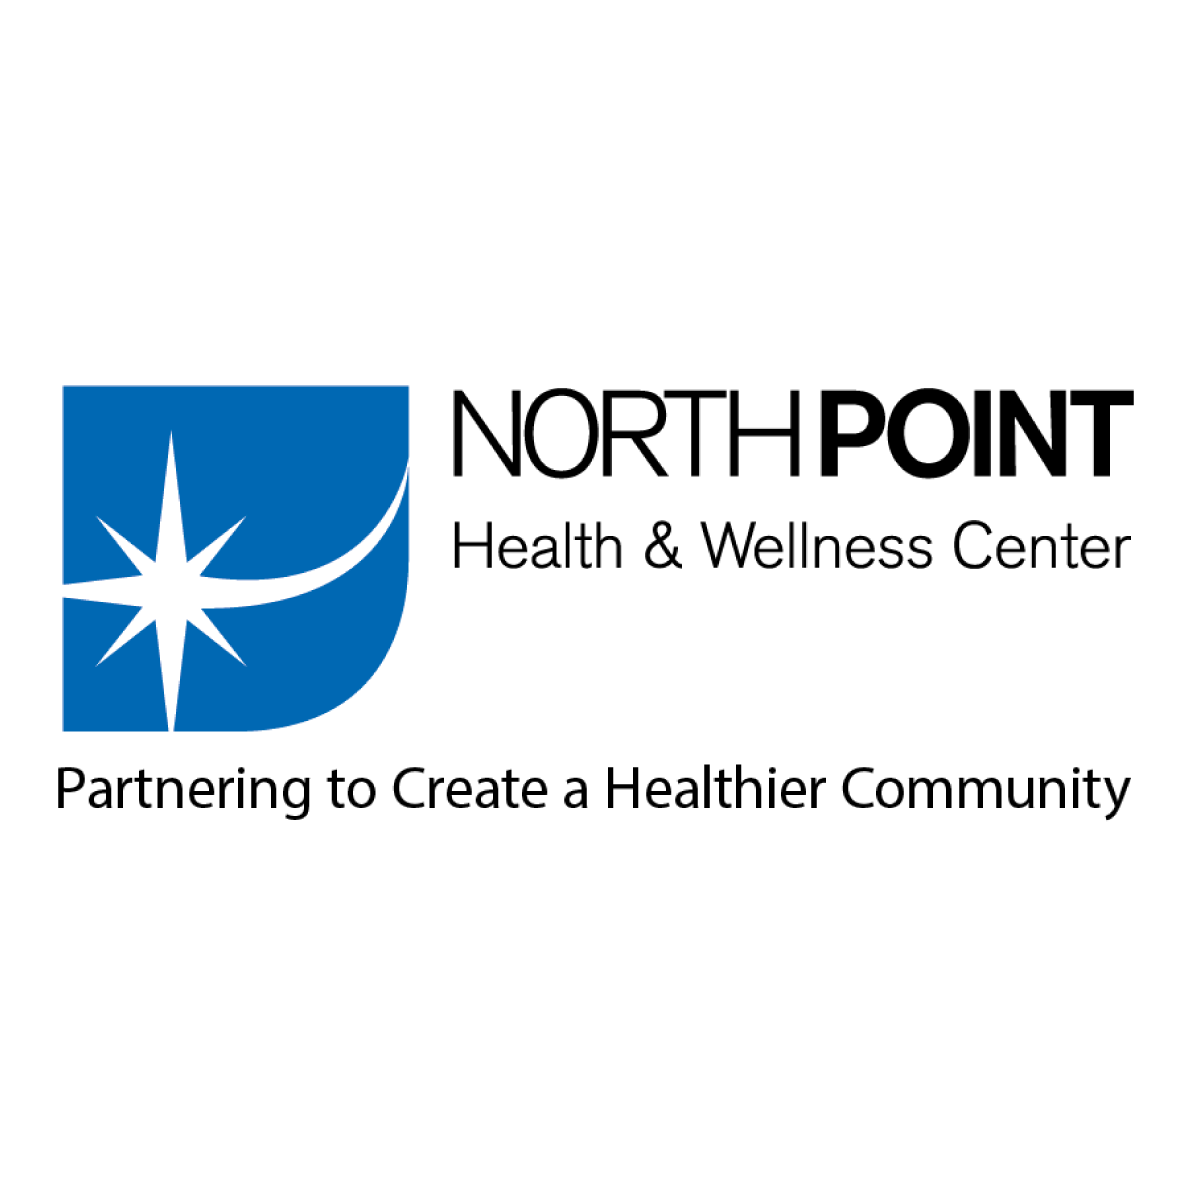 Centro de Salud y Bienestar Northpoint
northpointhealth.org